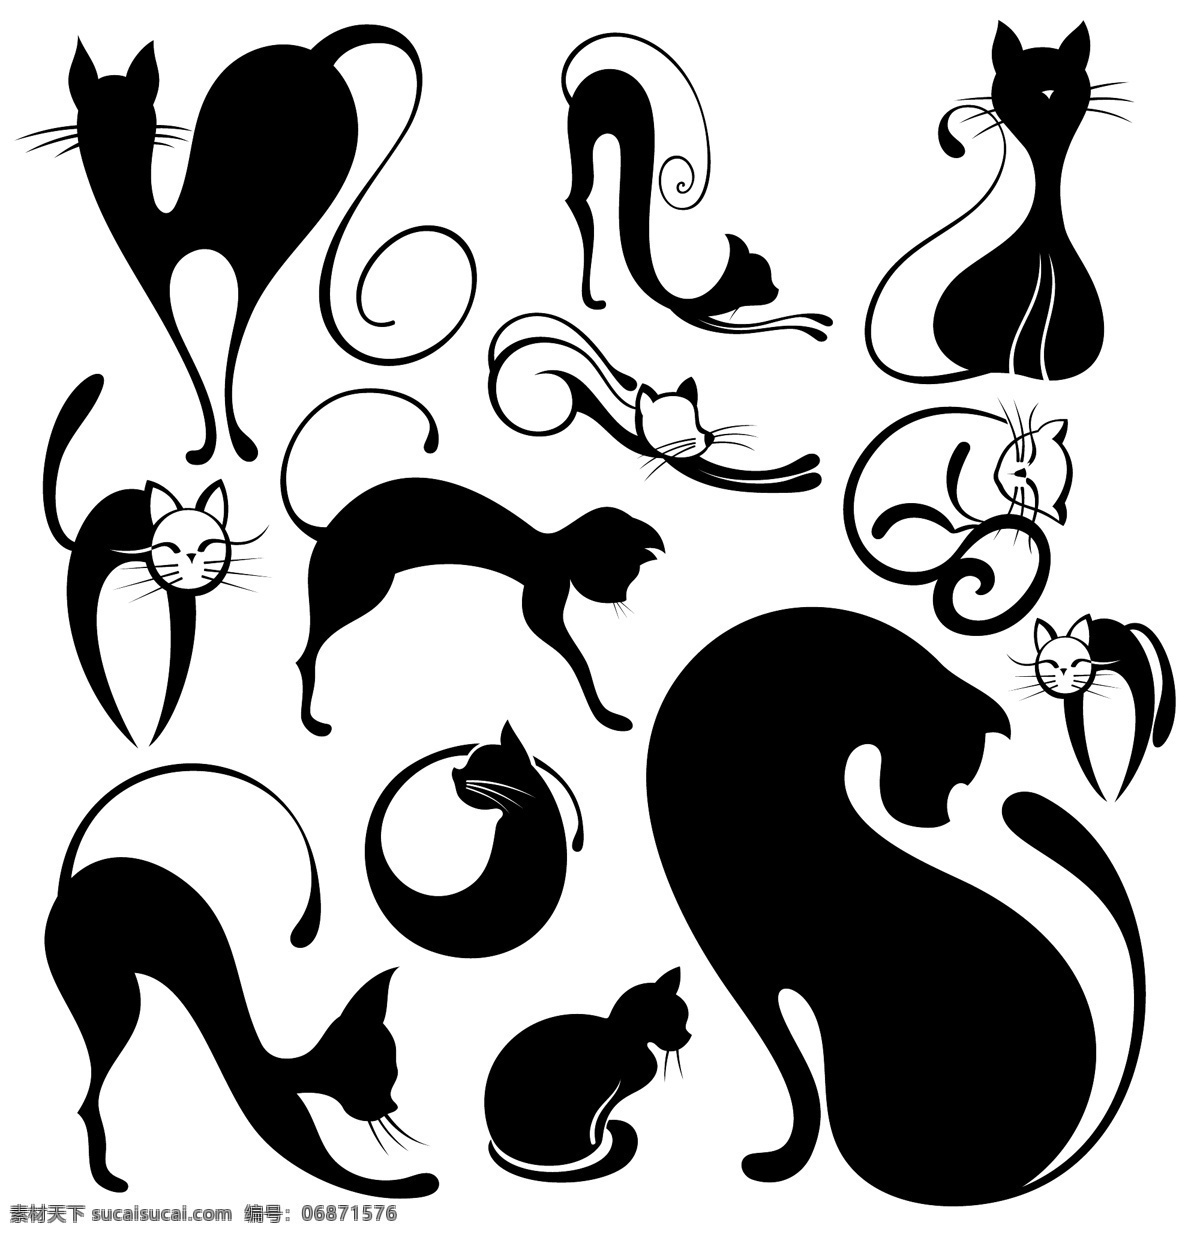 动物 剪影 宠物 动物剪影 家禽家畜 猫 猫咪 生物世界 矢量 模板下载 可爱 psd源文件